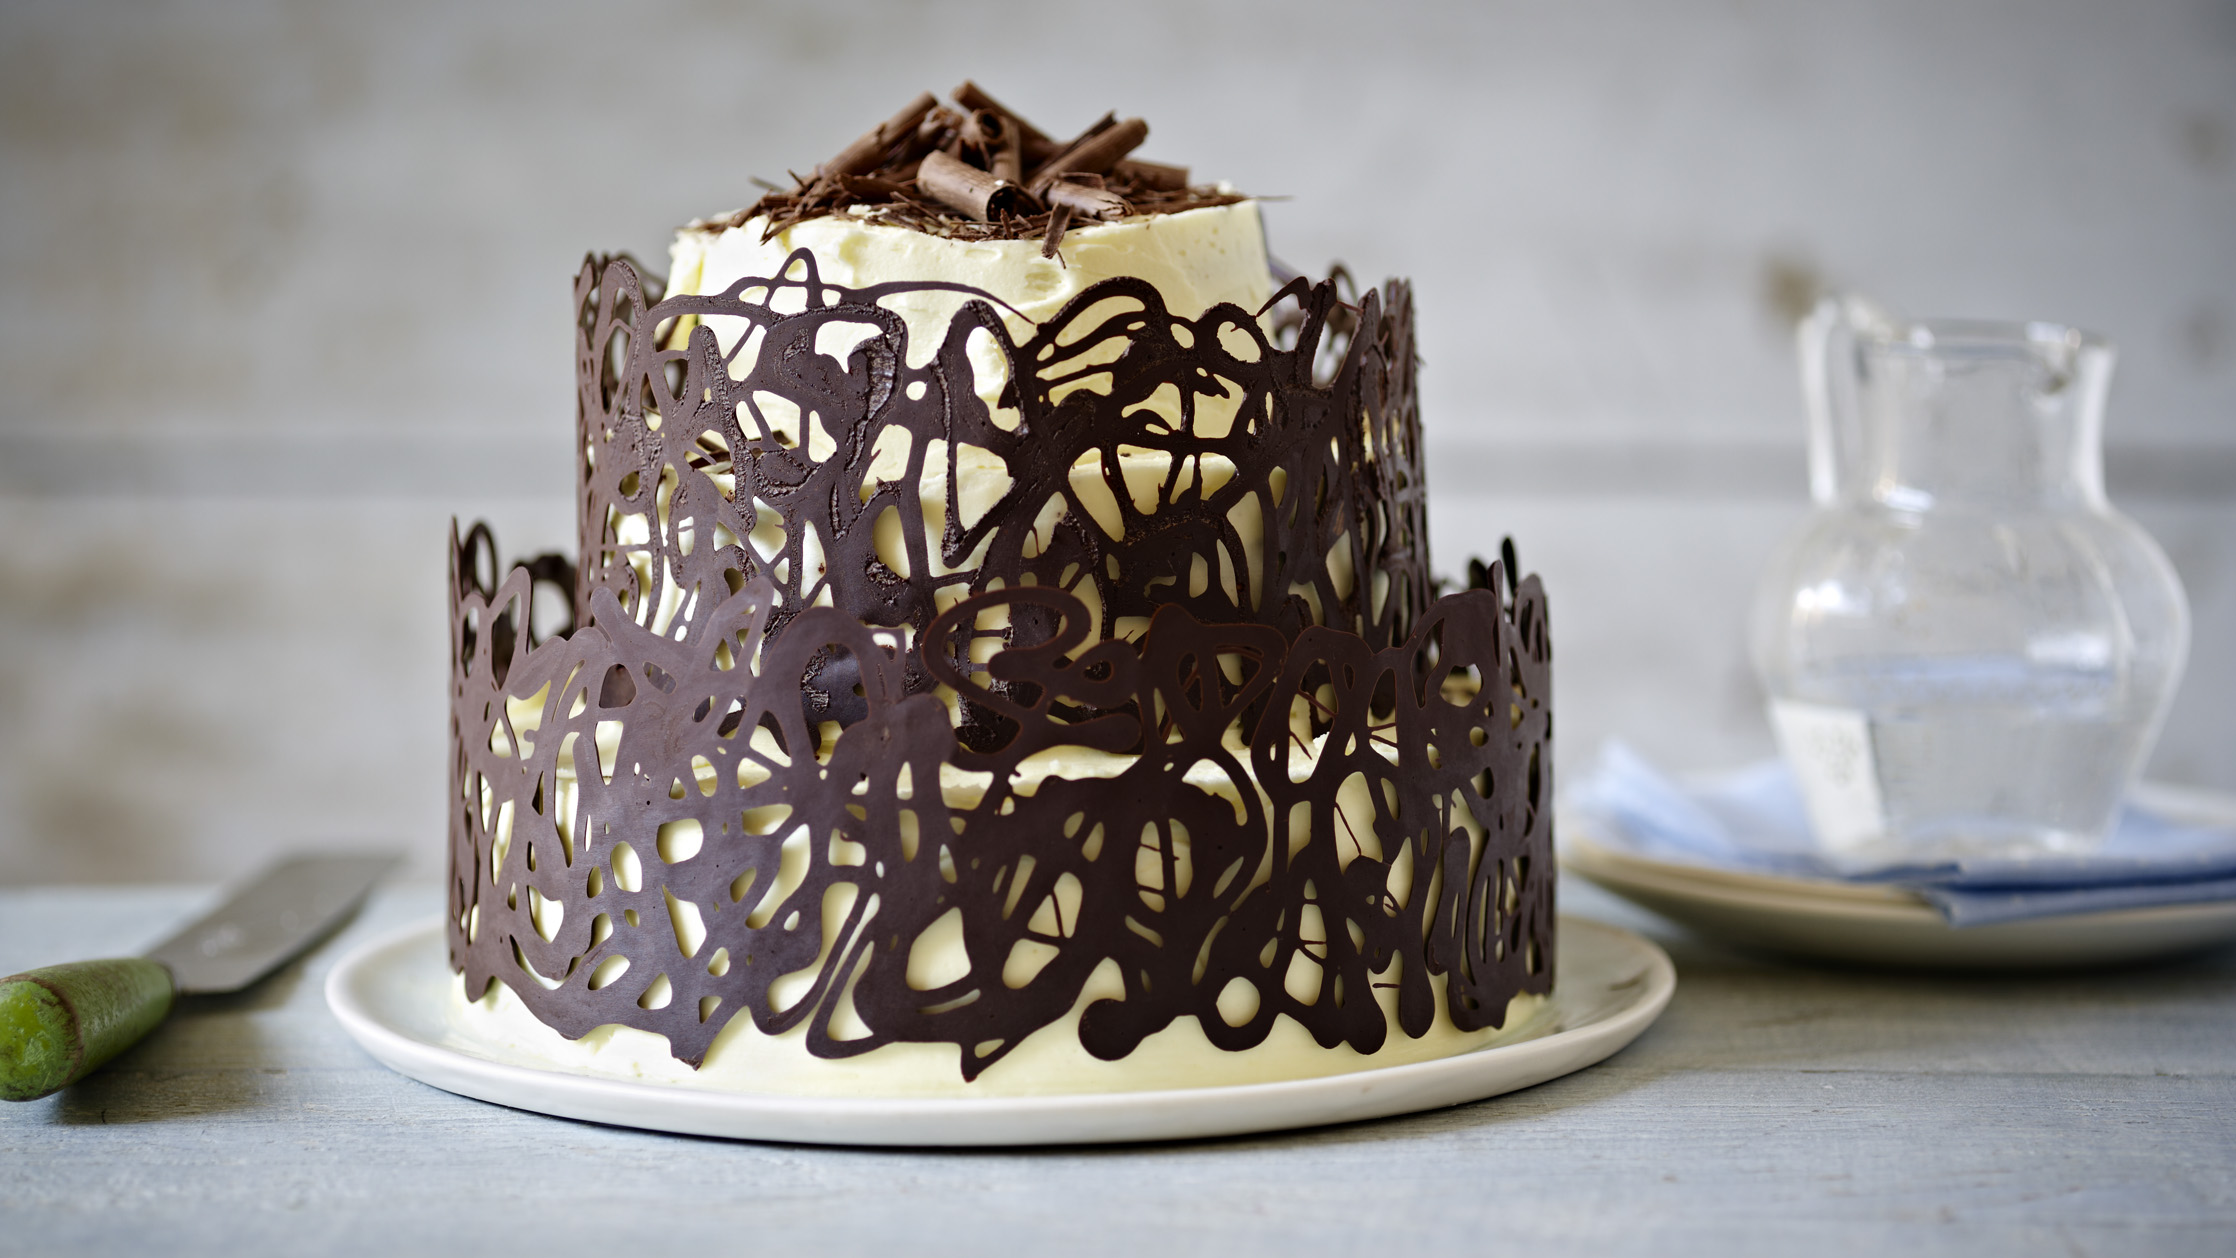 Three-Layer Chocolate Ganache Cake Recipe: How to Make It